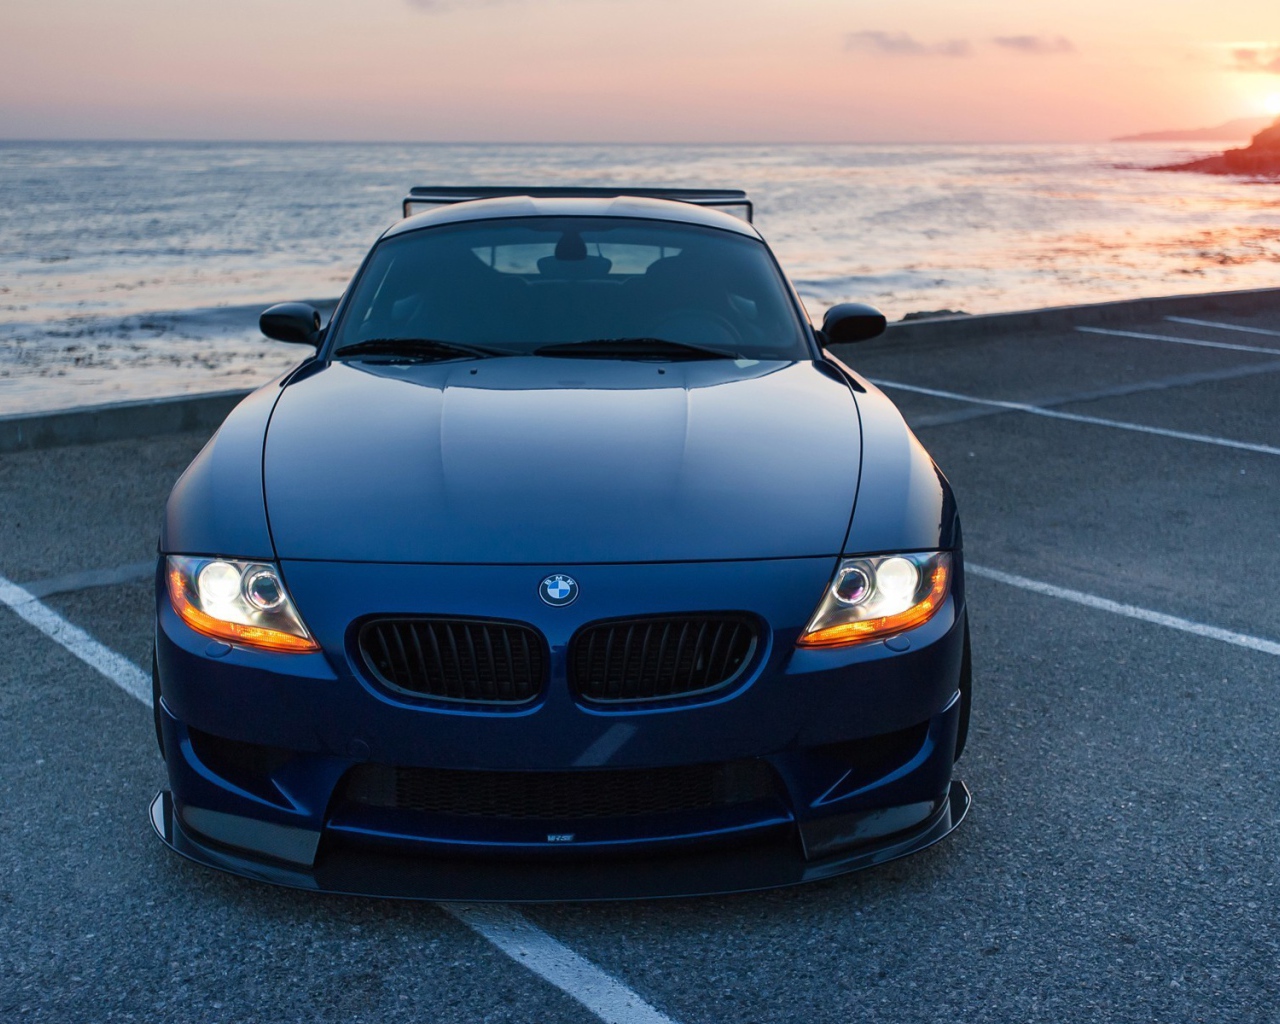 Синий BMW у морского побережья